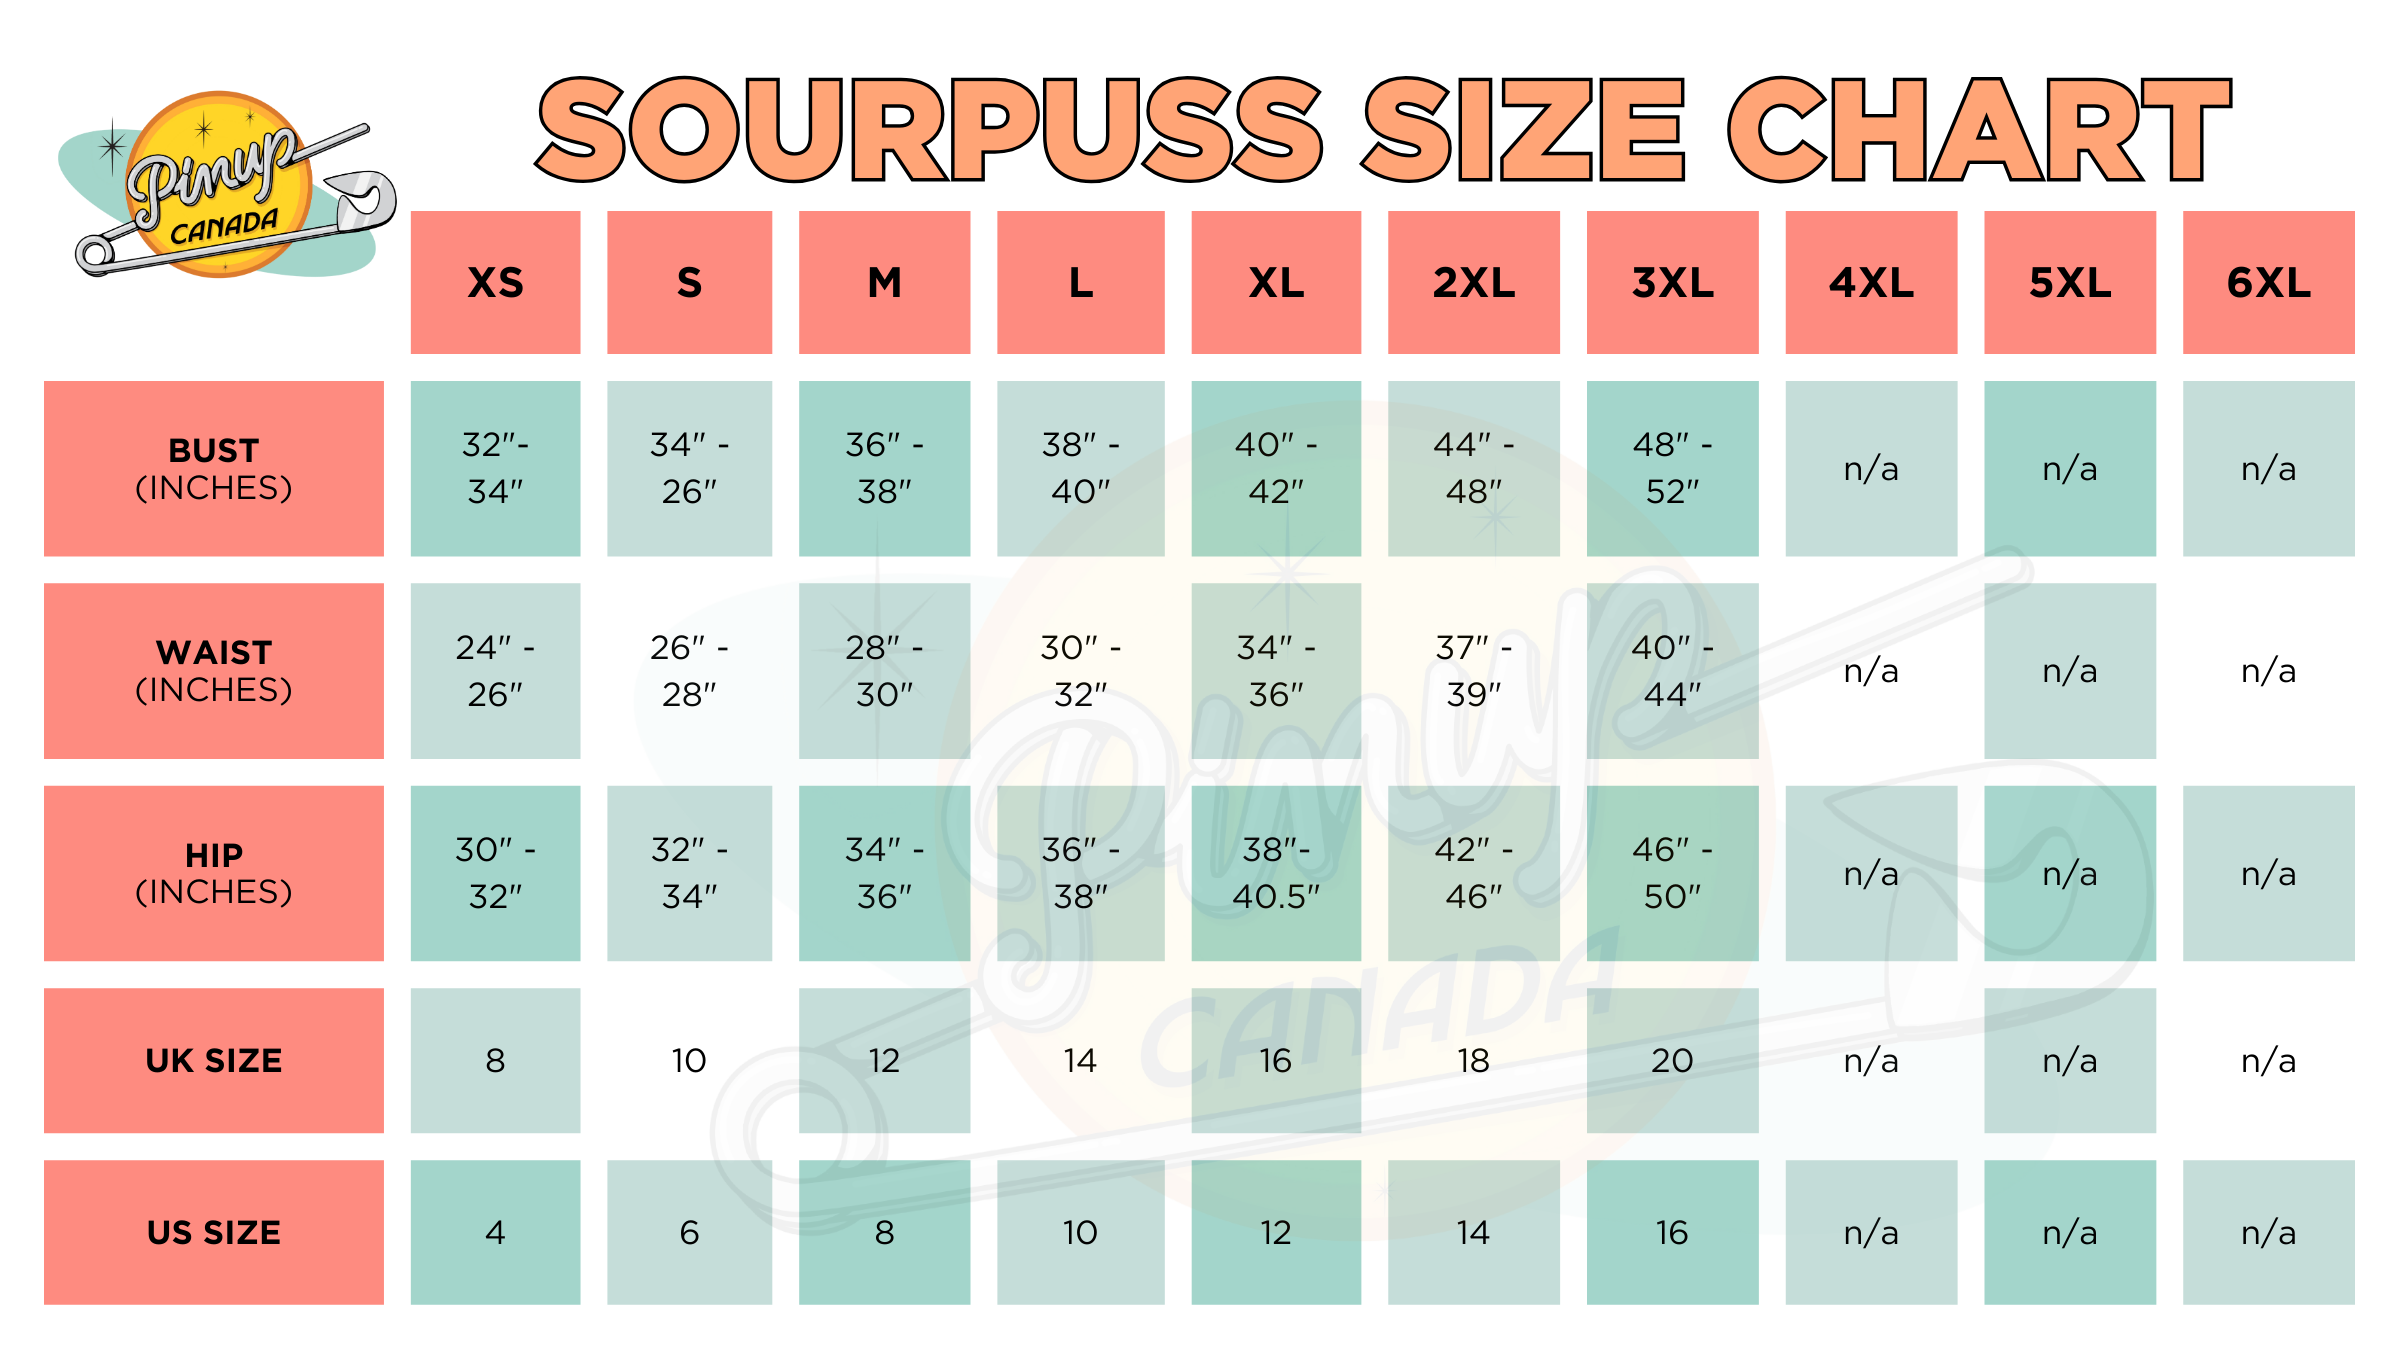 Sourpuss Size Chart